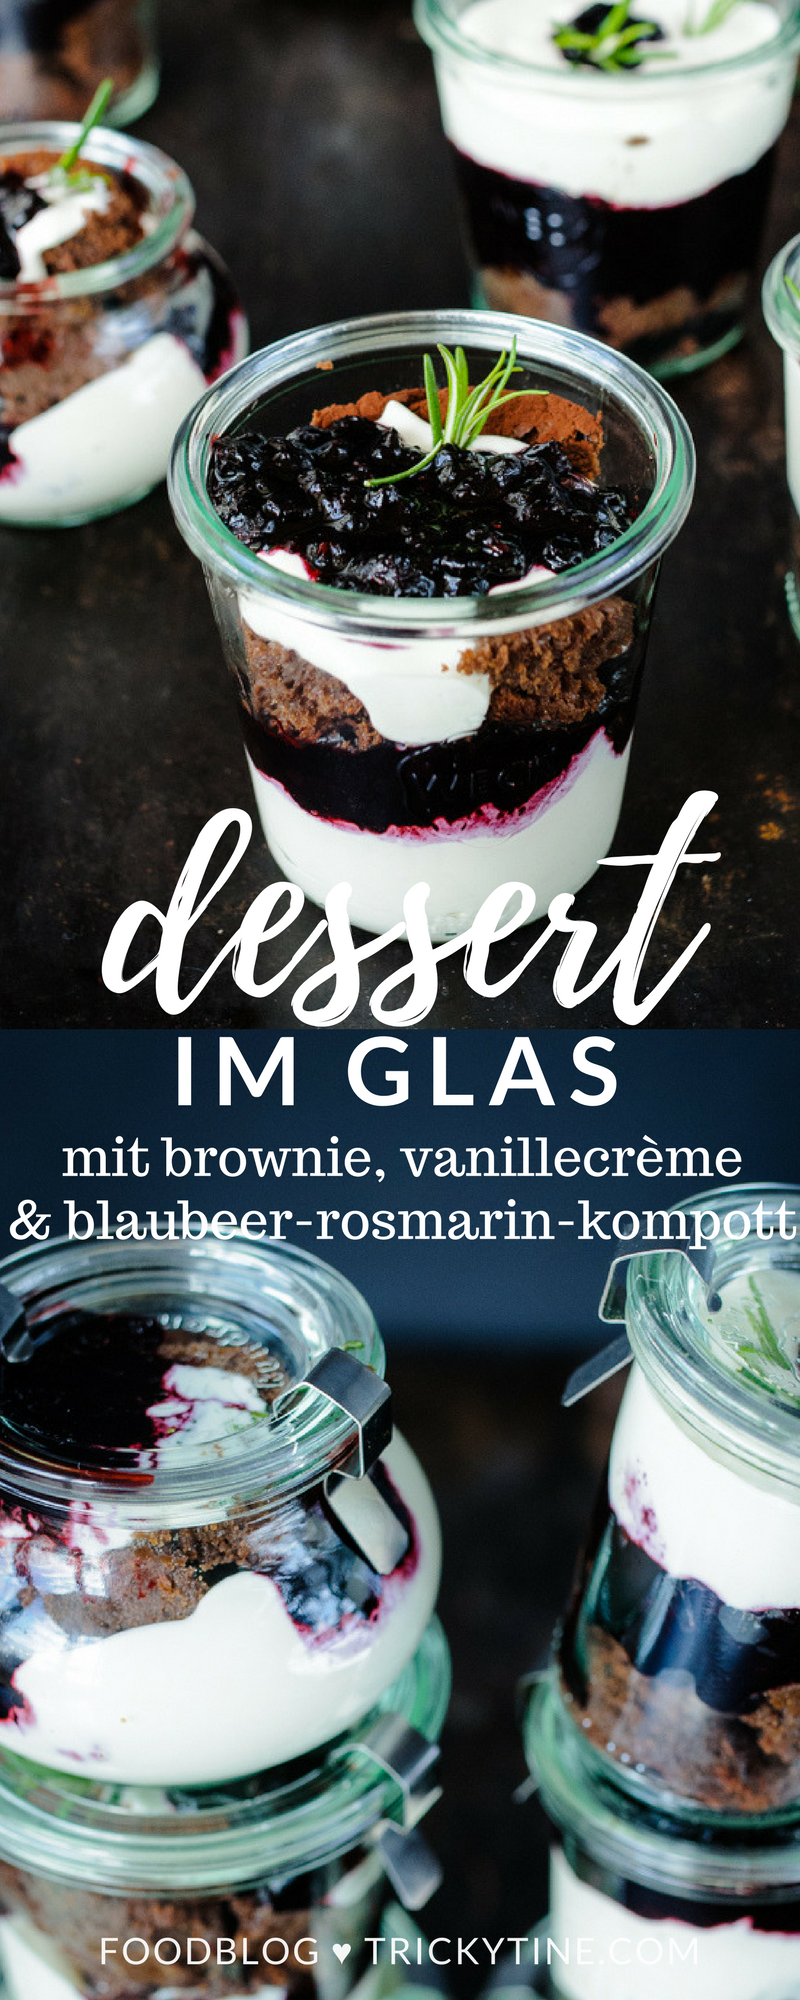 Dessert im Glas: Brownie Blaubeer-Rosmarin-Kompott und Vanille-Mascarpone-Creme -   17 desserts Im Glas hochzeit ideas